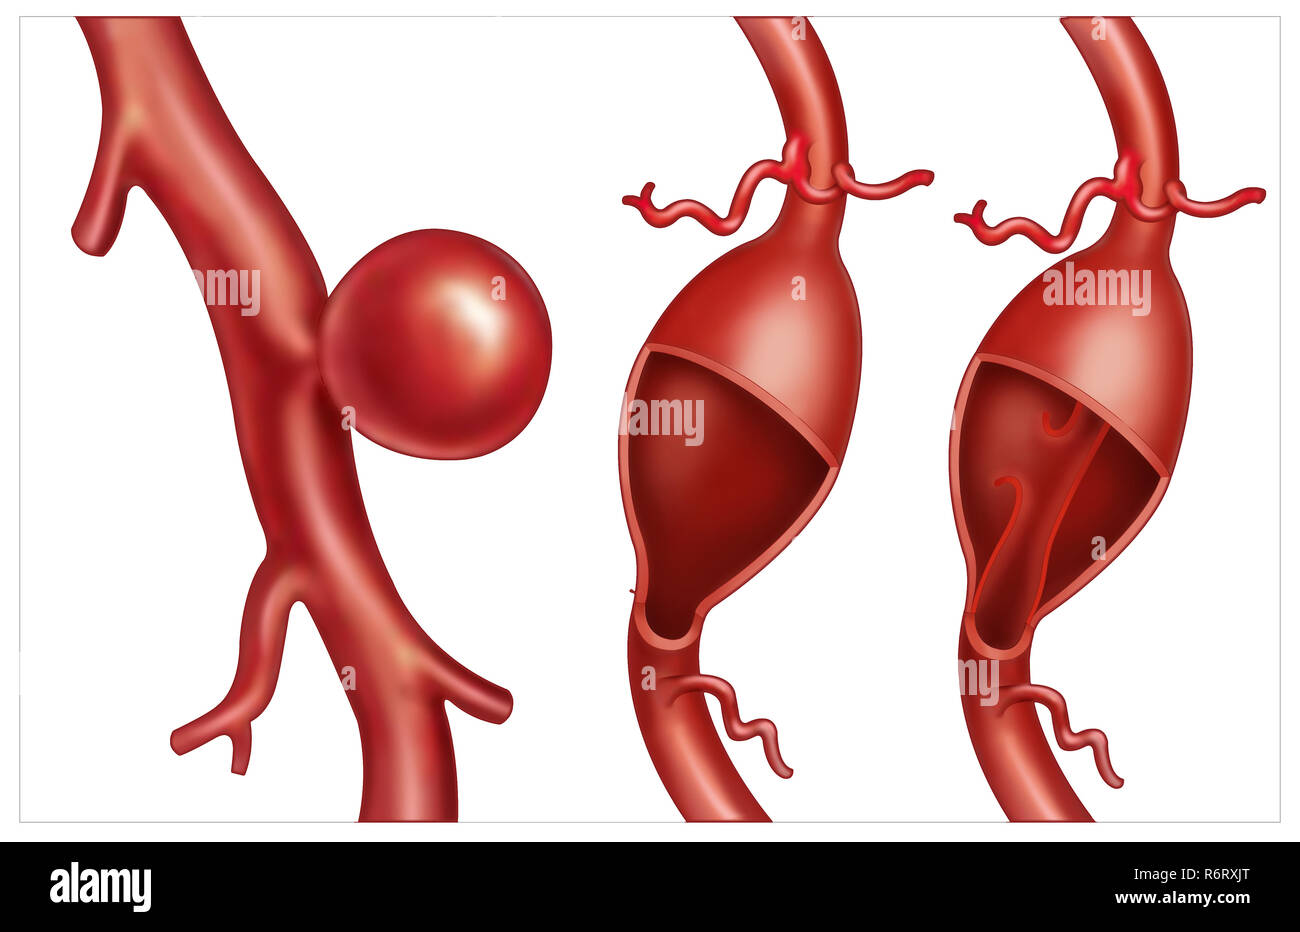 Illustration schématique des types d'anévrismes, c'est l'élargissement d'une artère. Les types d'anévrismes du cerveau sont : sacculaire, fusiforme et secte. Banque D'Images